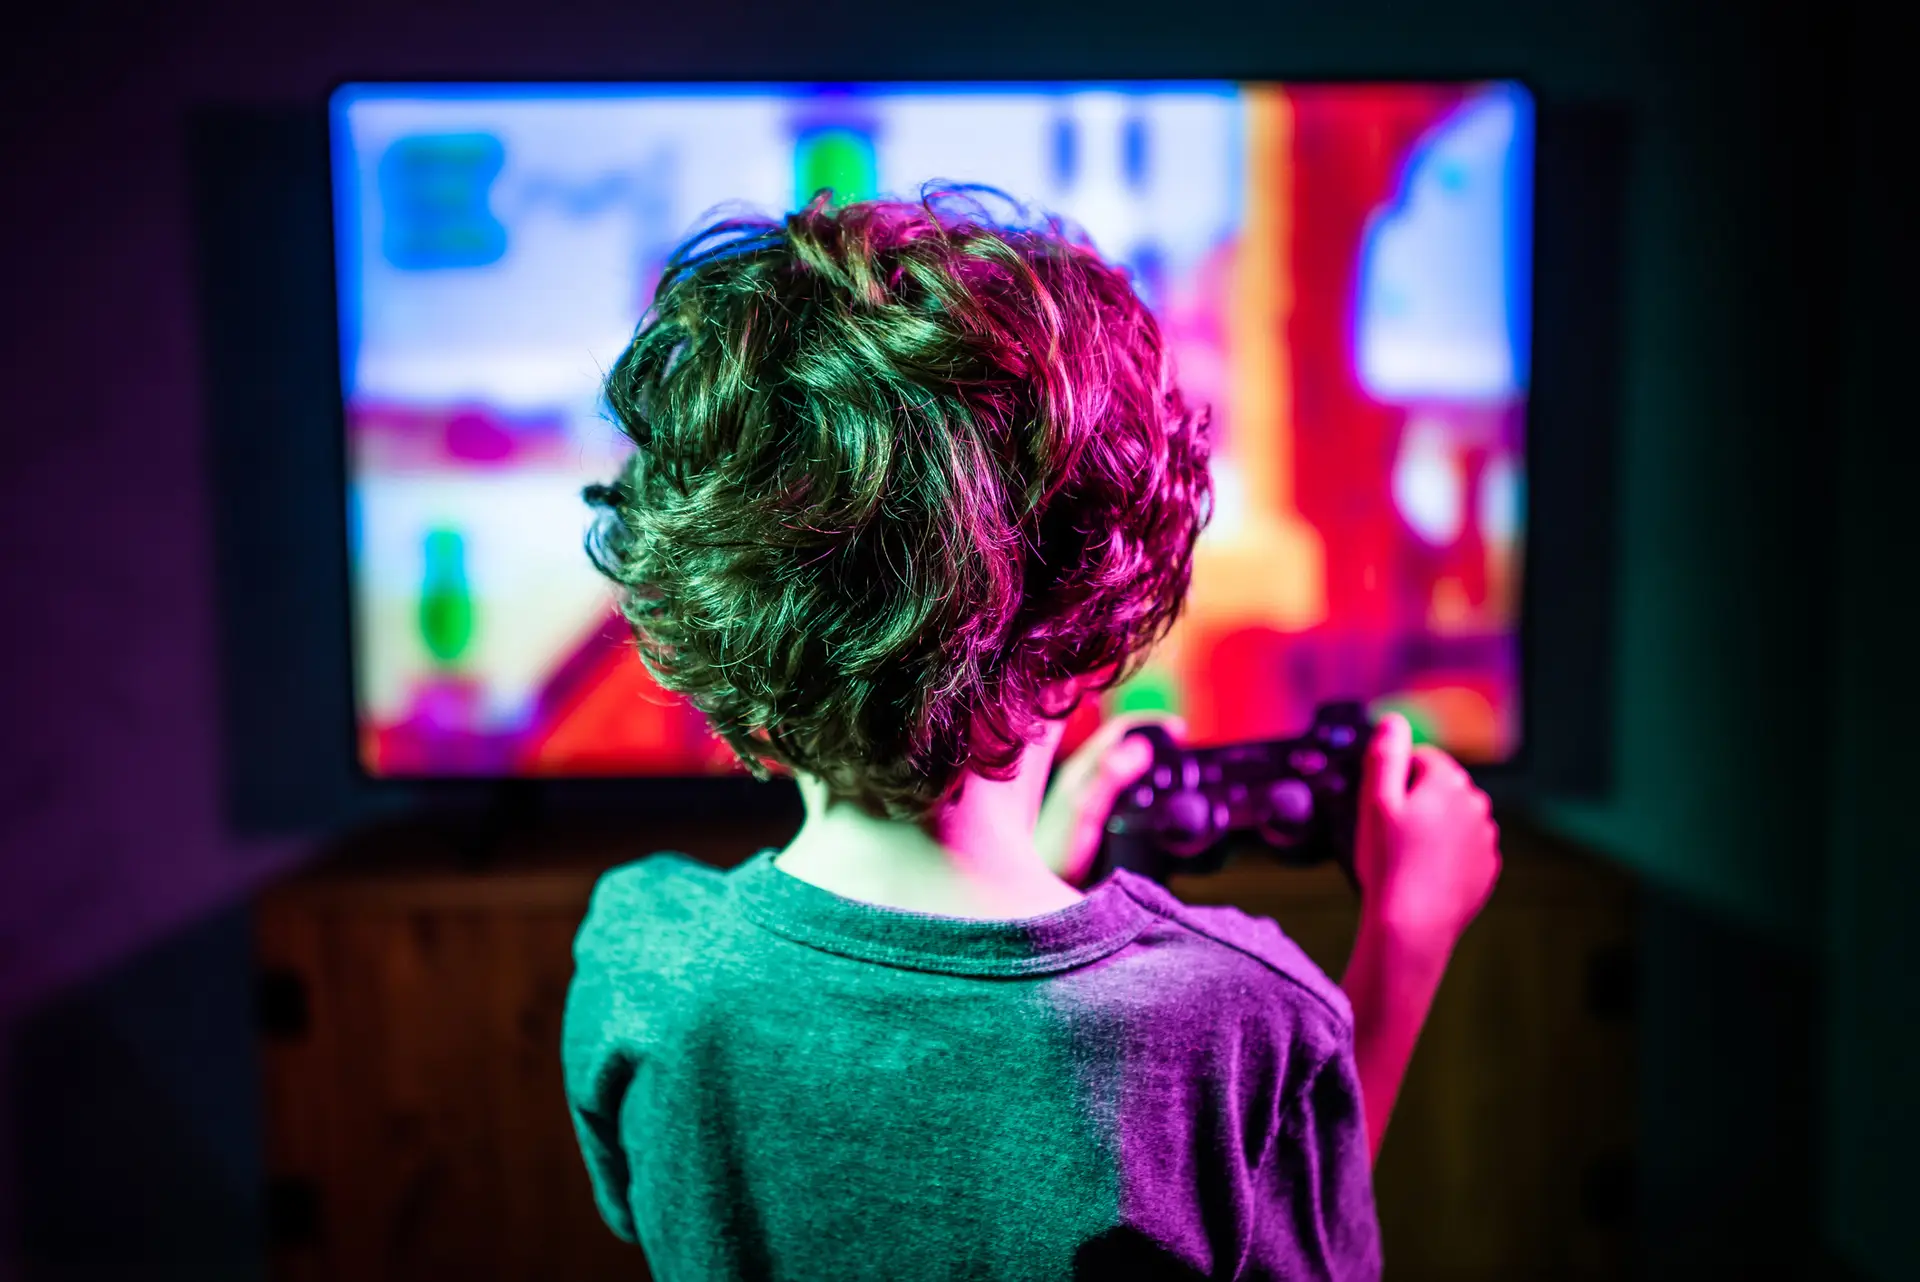 "Crianças muito pequenas que passem muito tempo a jogar videojogos podem atrasar as competências de leitura ou de escrita"